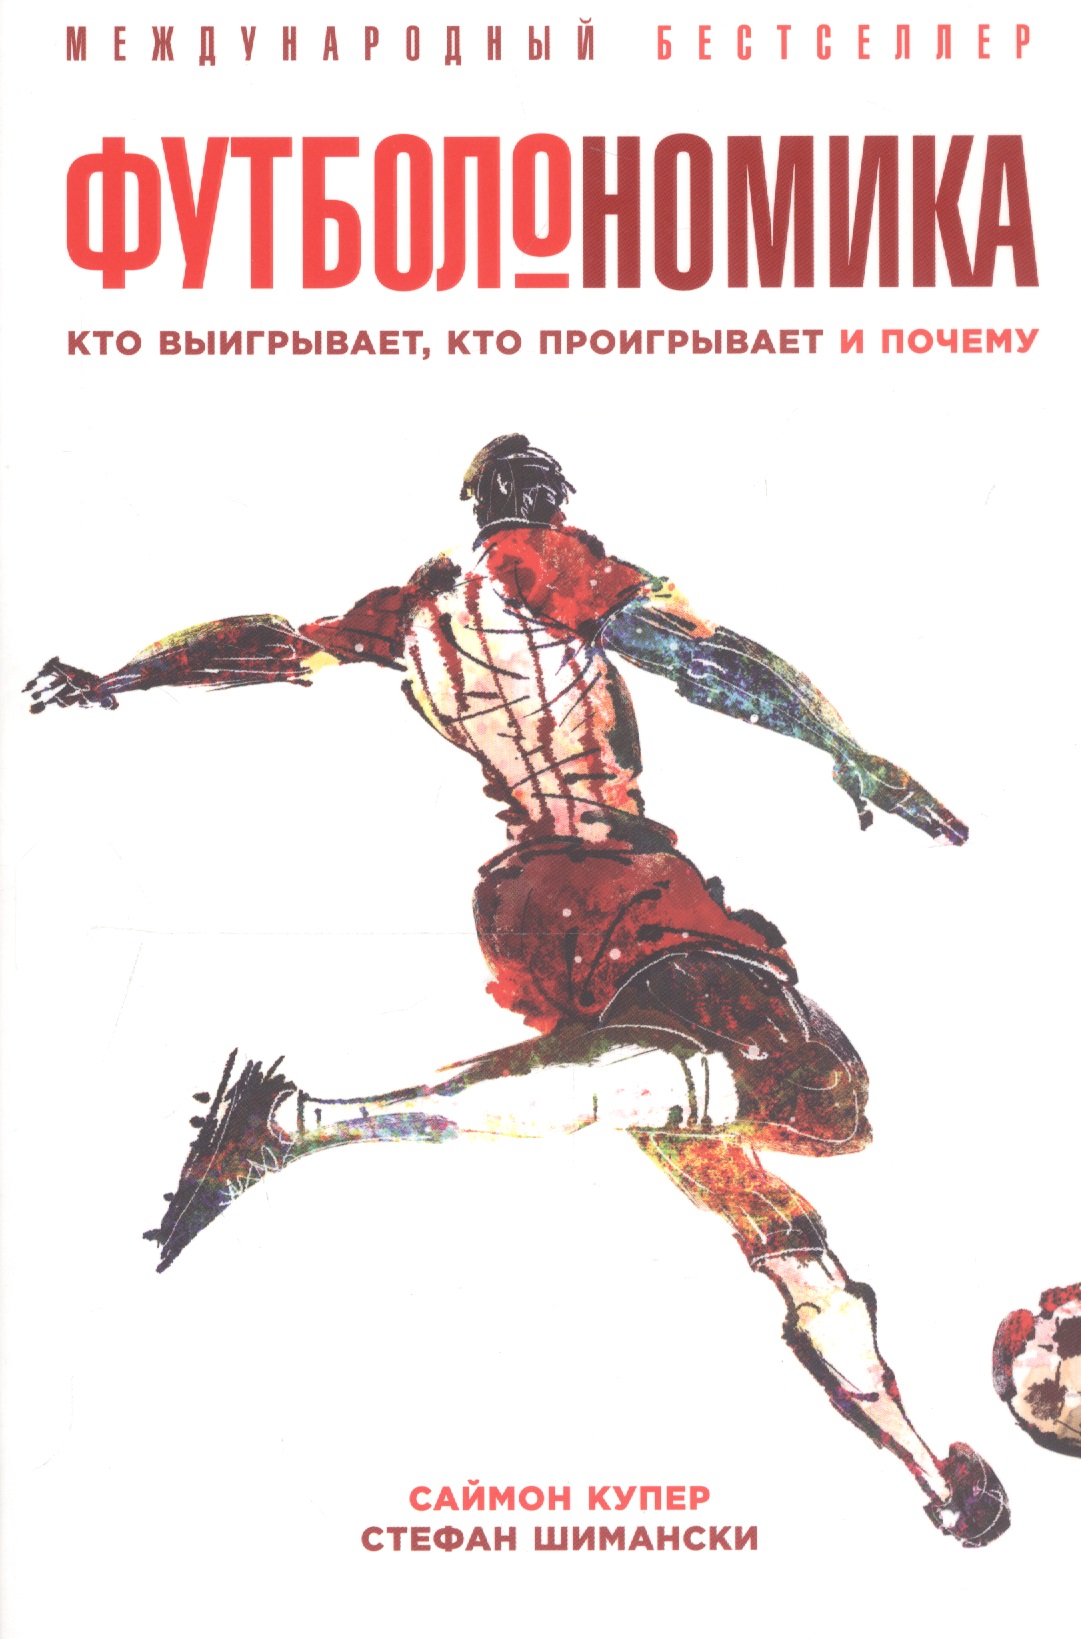 Футболономика Кто выигрывает кто проигрывает и почему (м) (5 изд) Купер